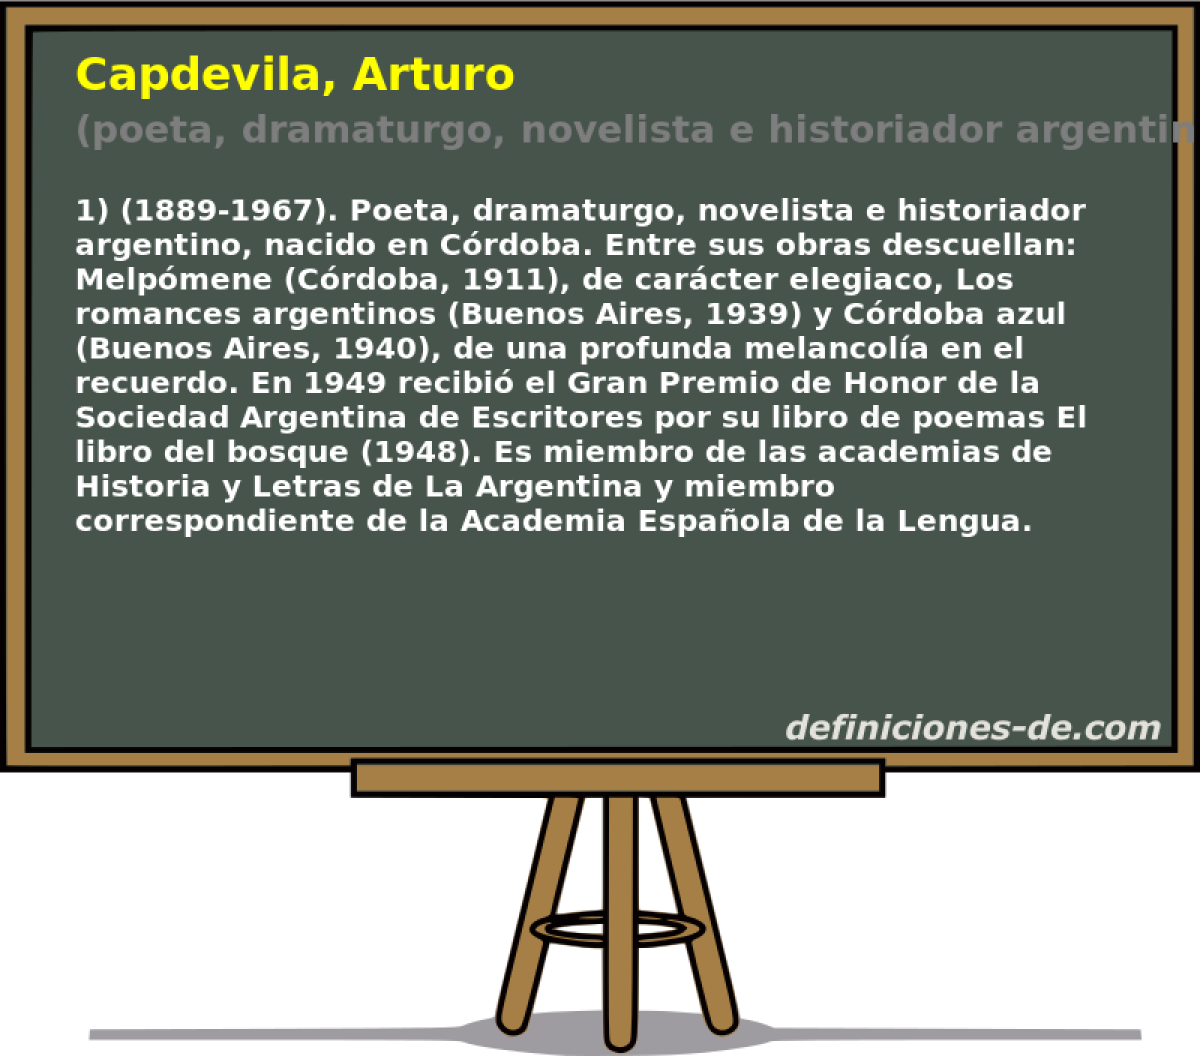 Capdevila, Arturo (poeta, dramaturgo, novelista e historiador argentino)